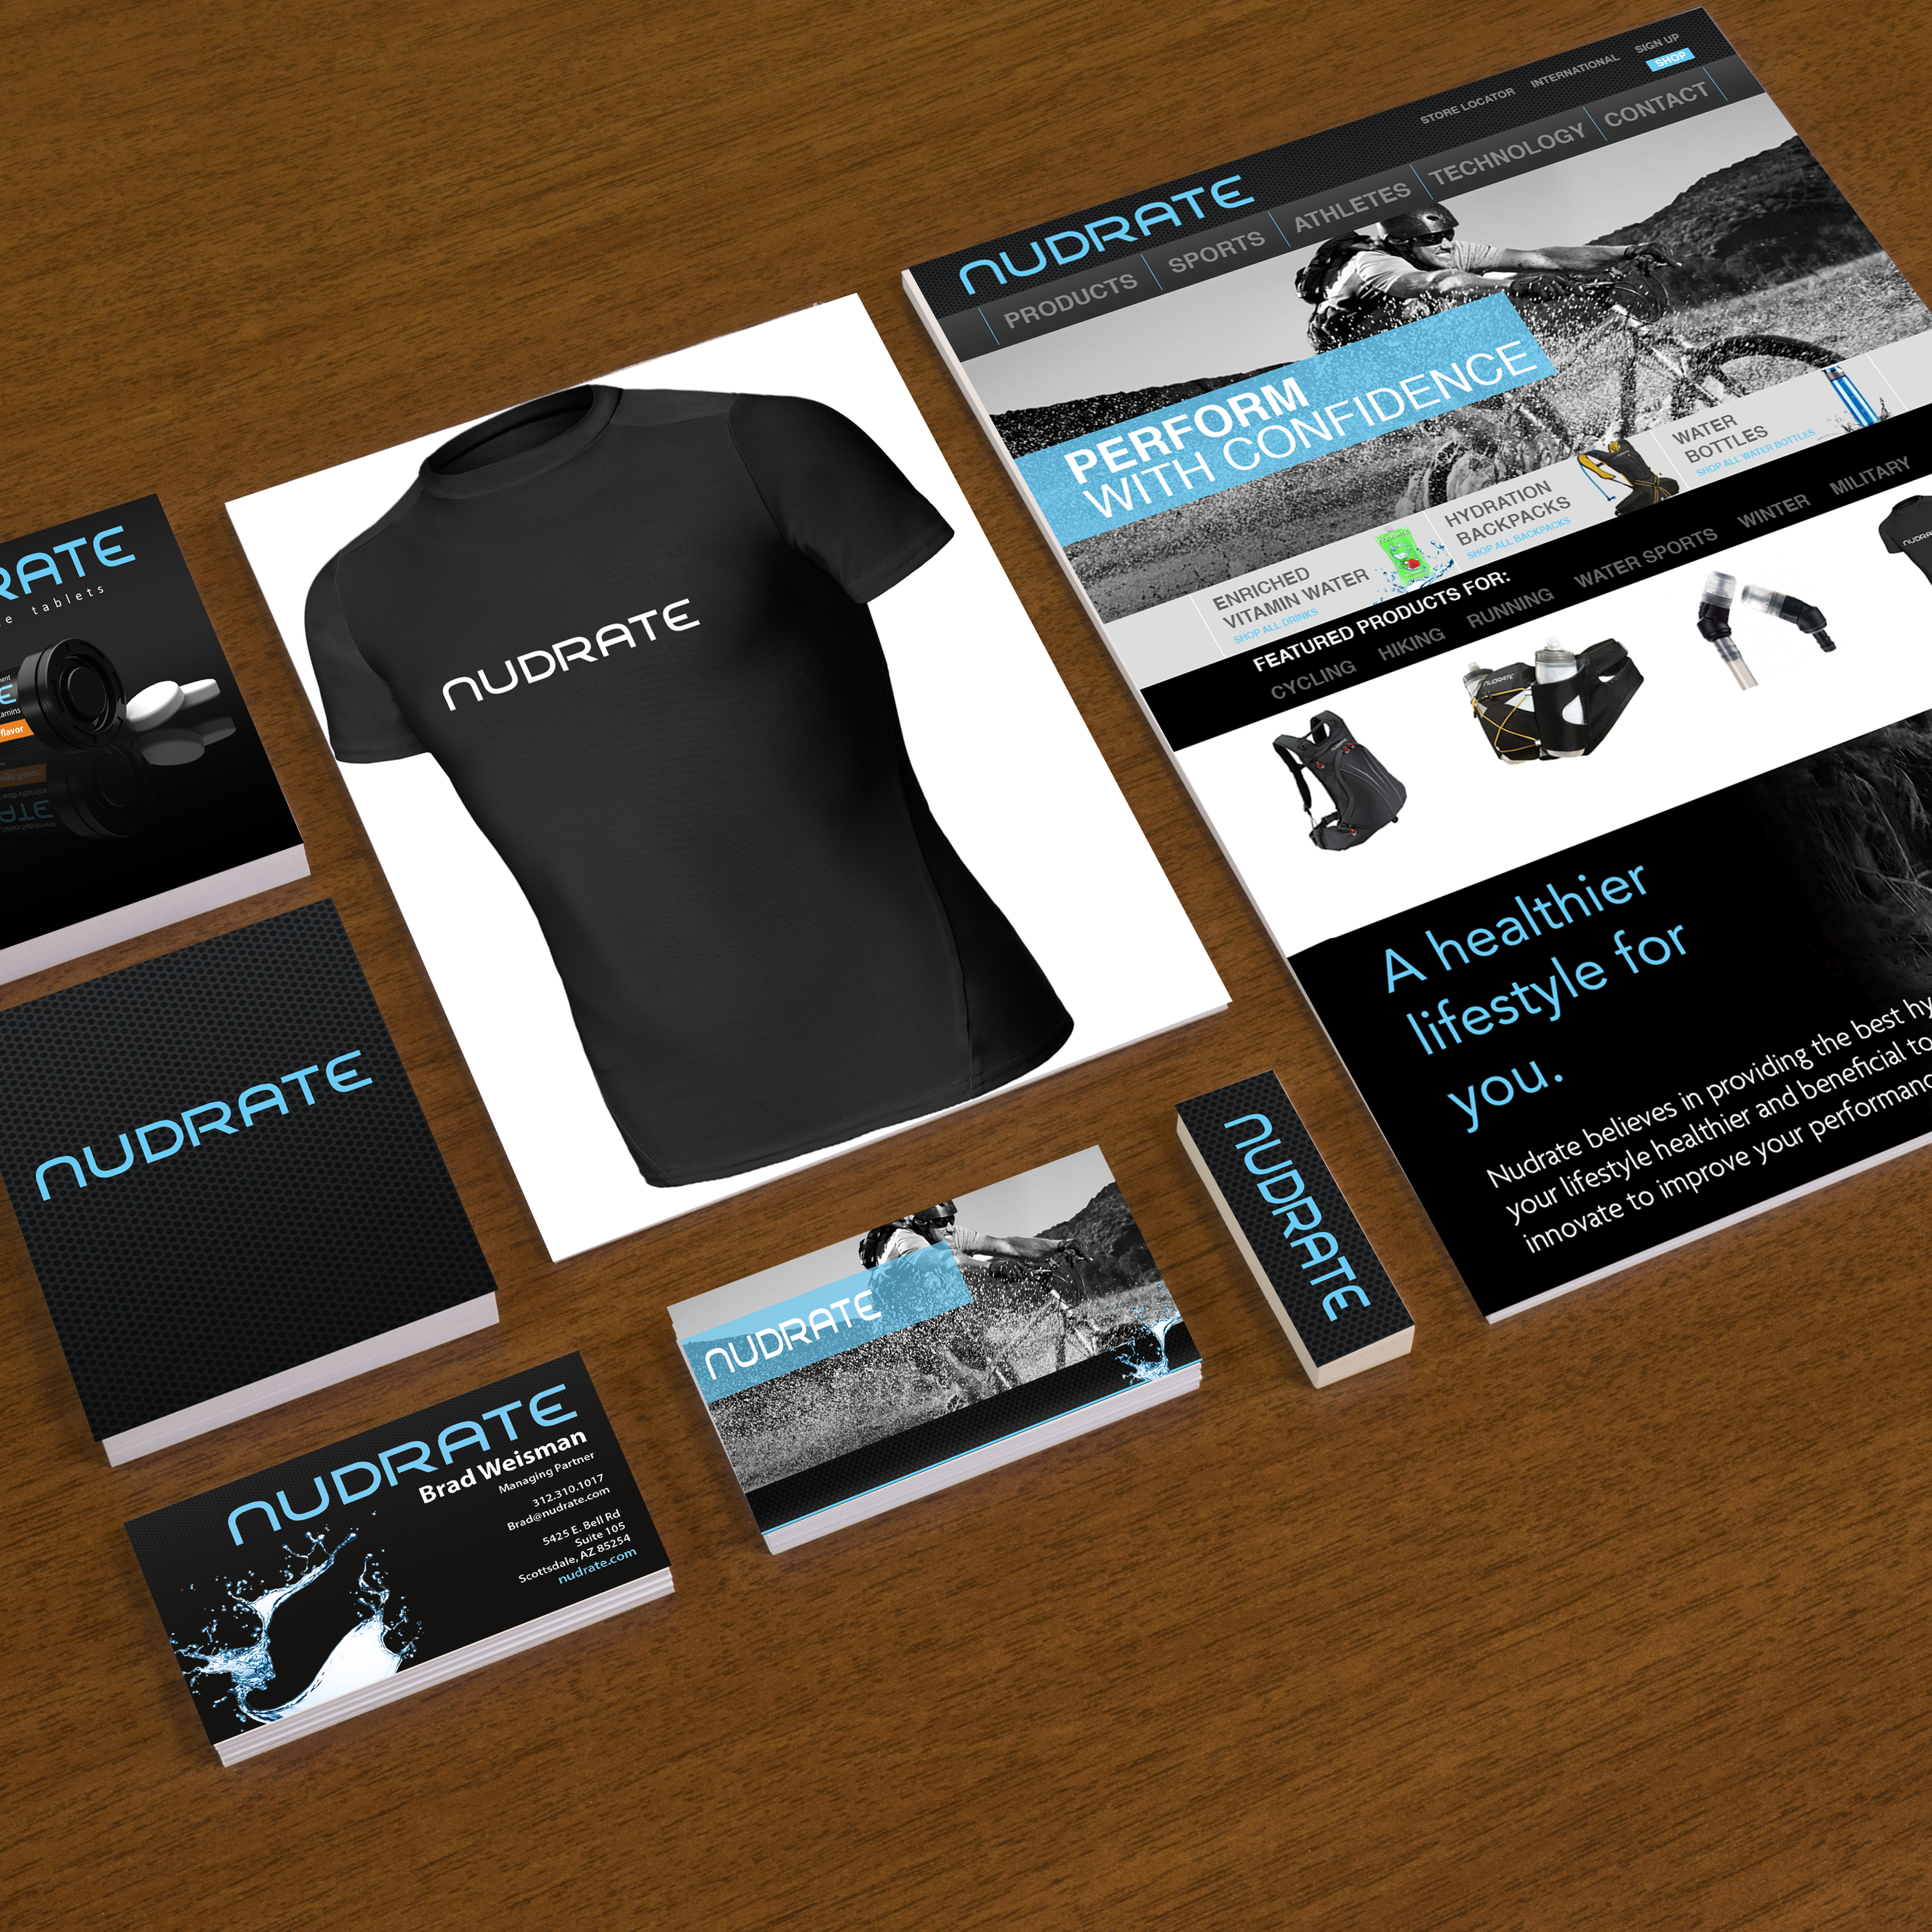 Avadium Design creating app design, product design for consumer products, industrial design of parts